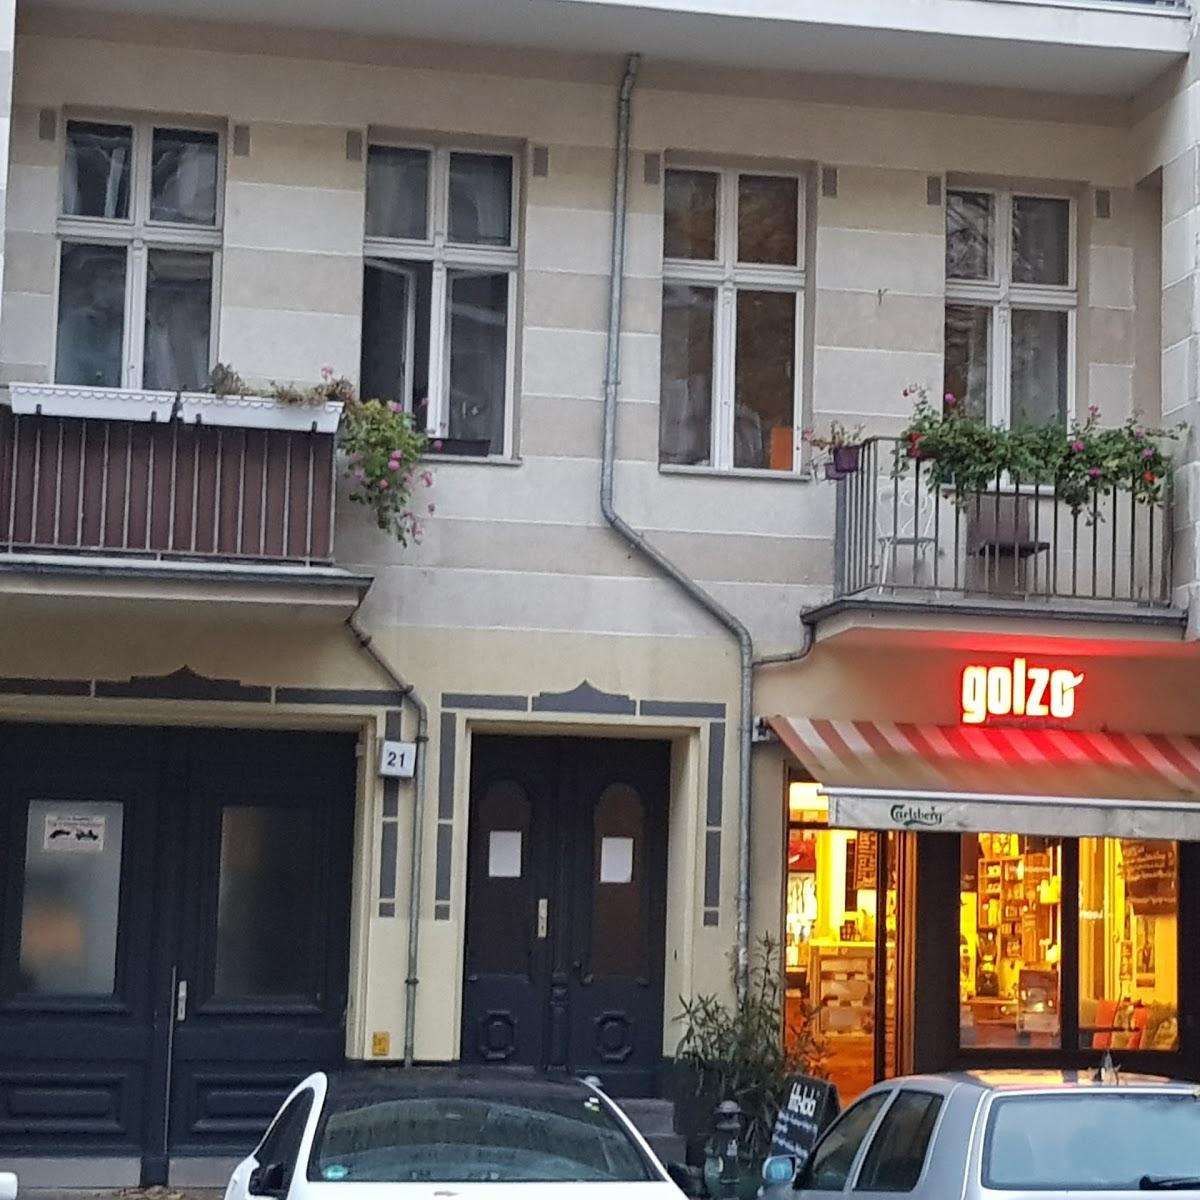 Restaurant "Golzo" in Berlin